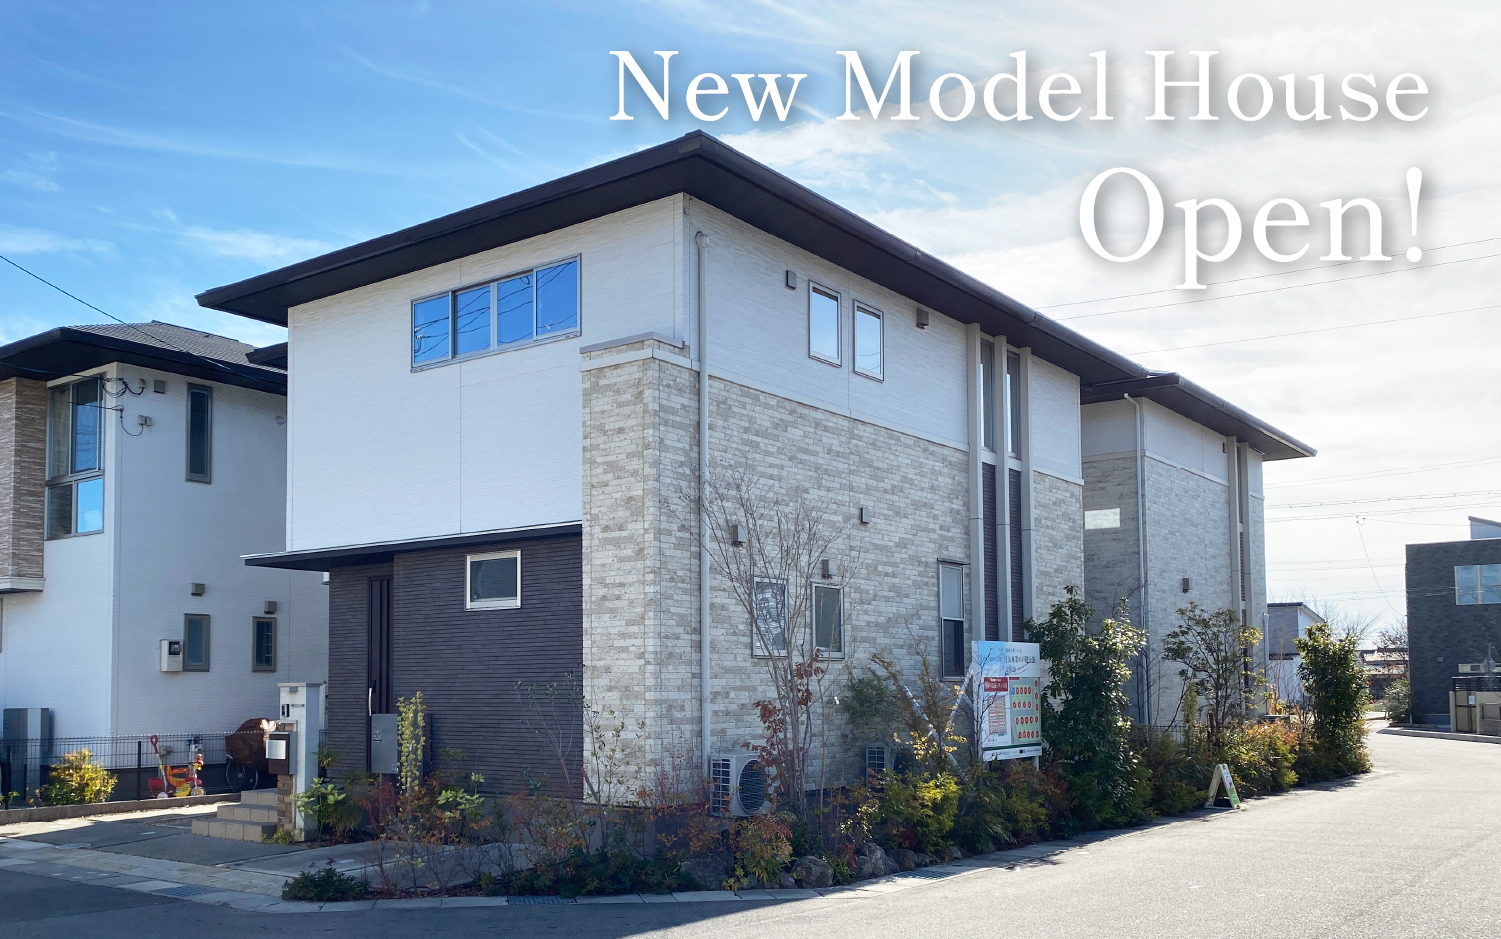 New Model House Open!